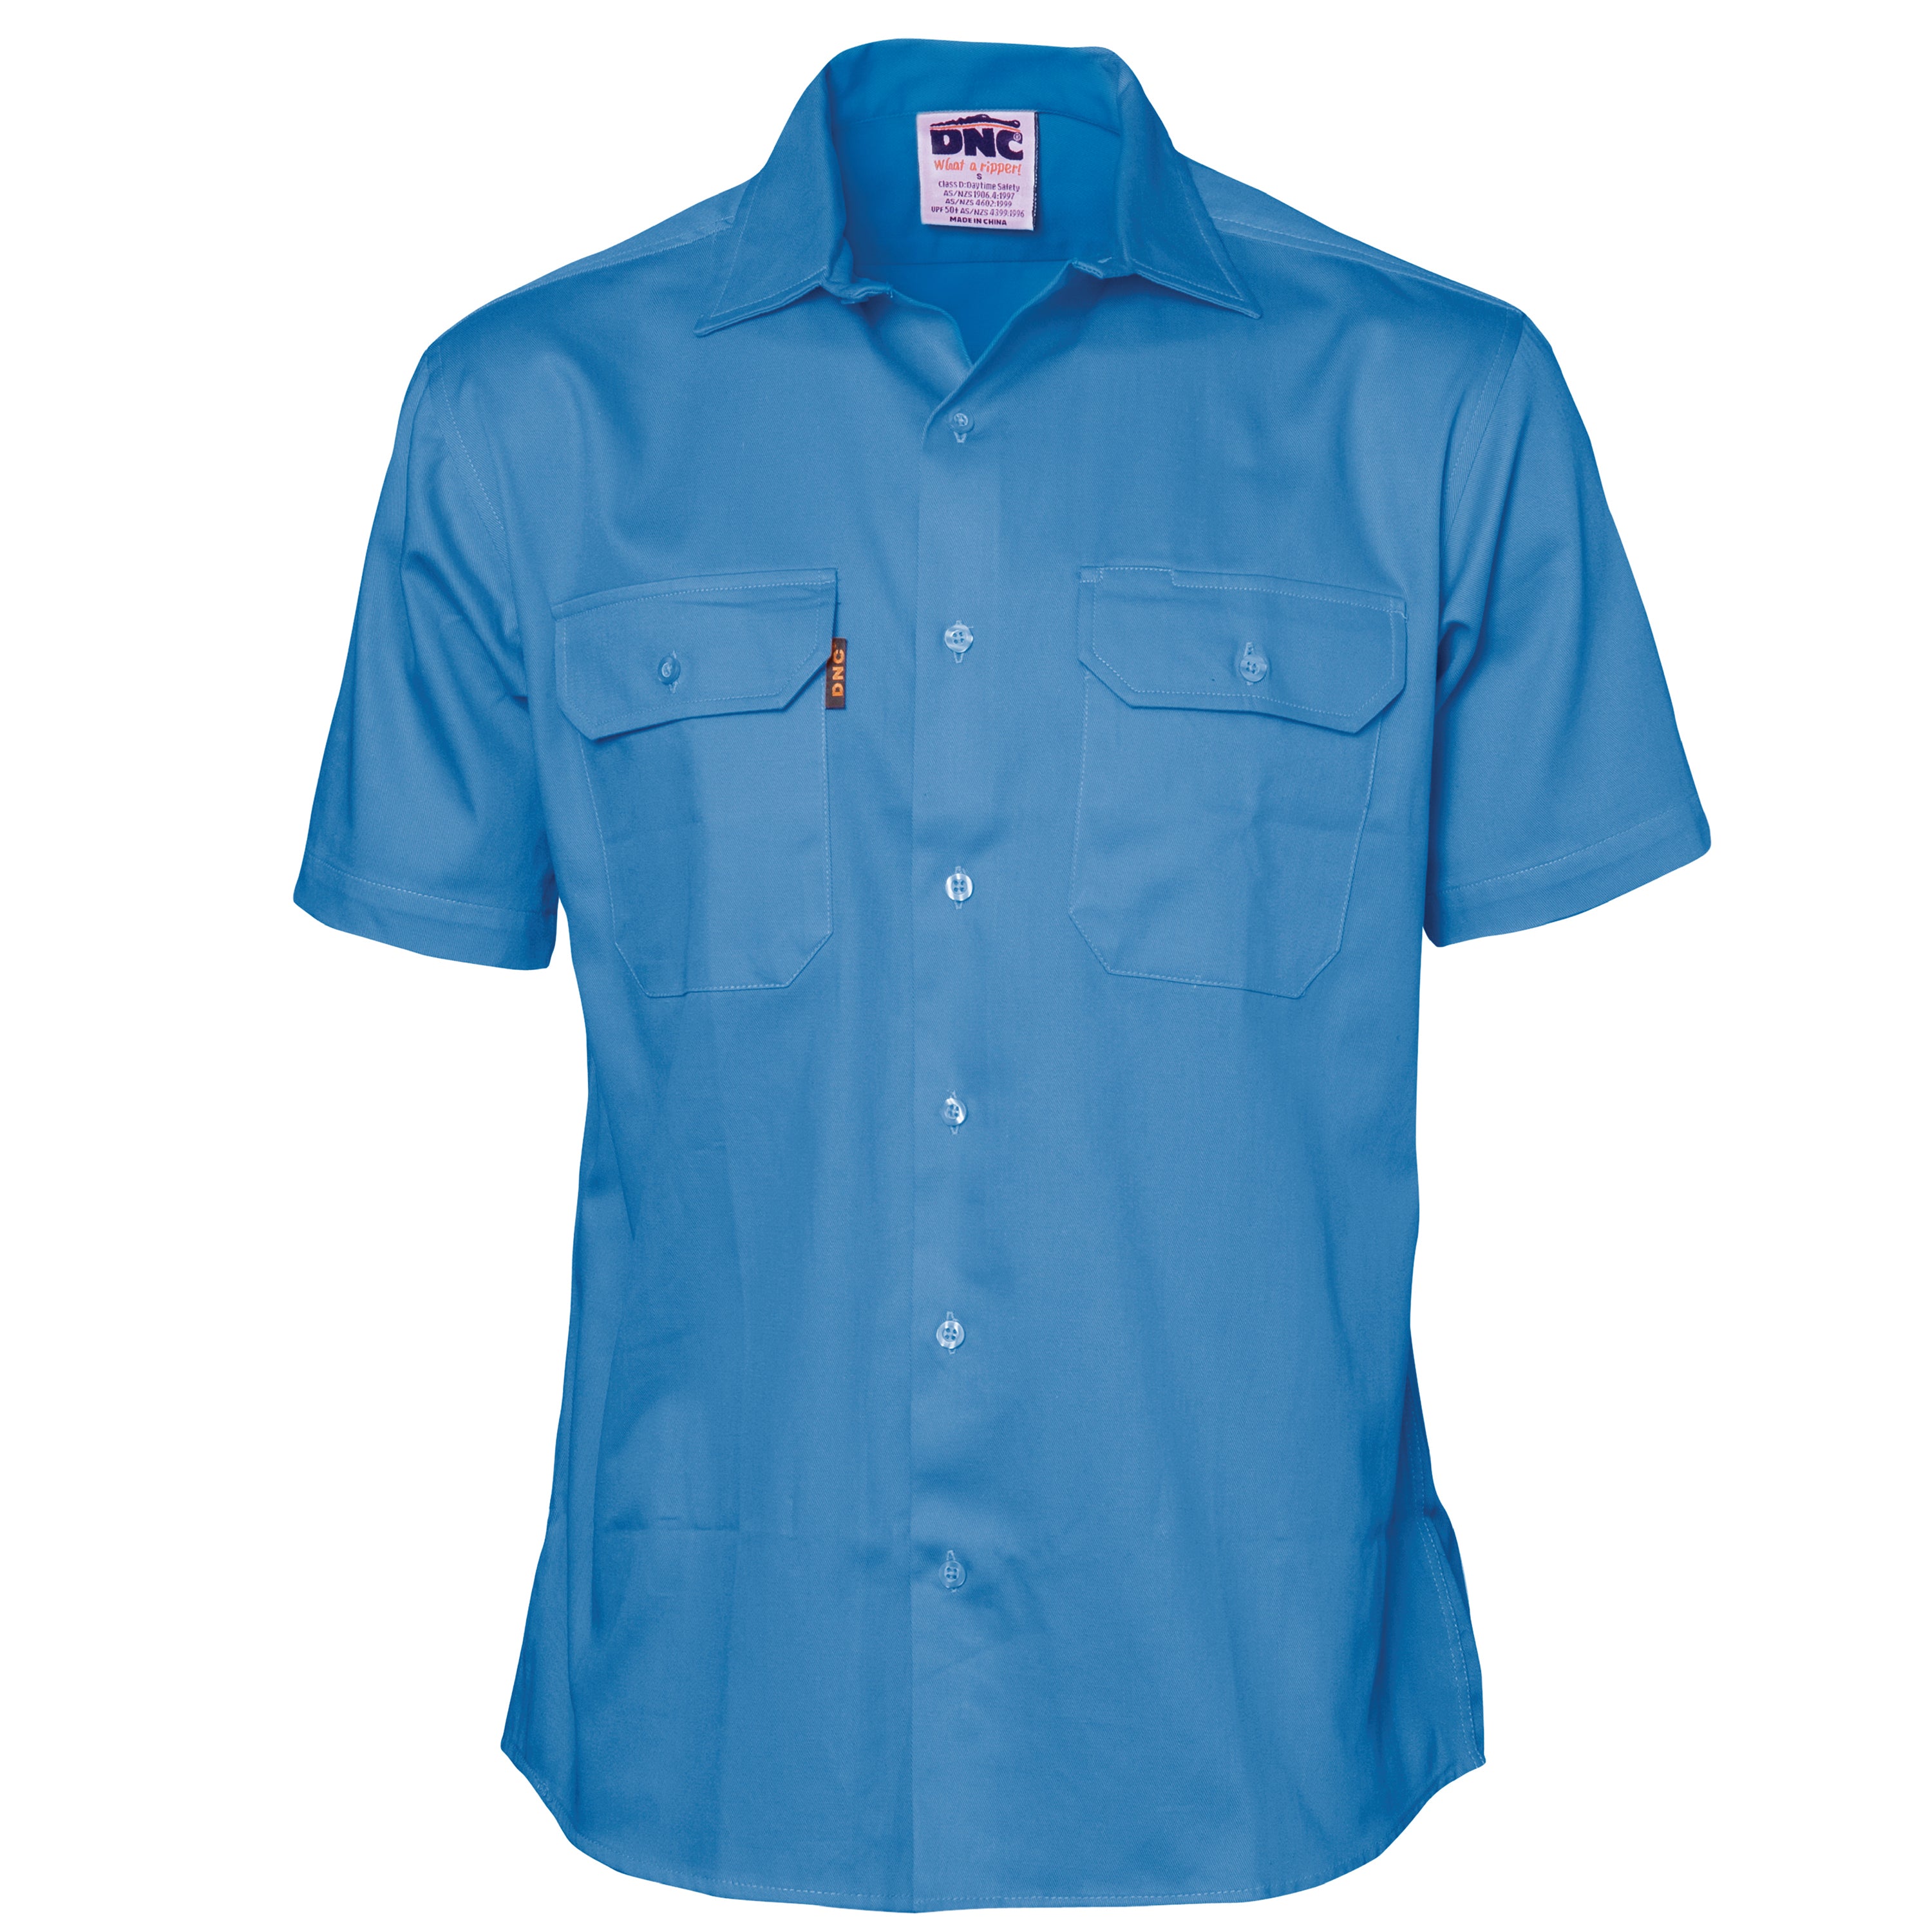 DNC 3201 Cotton Drill Work Shirt Short Sleeve